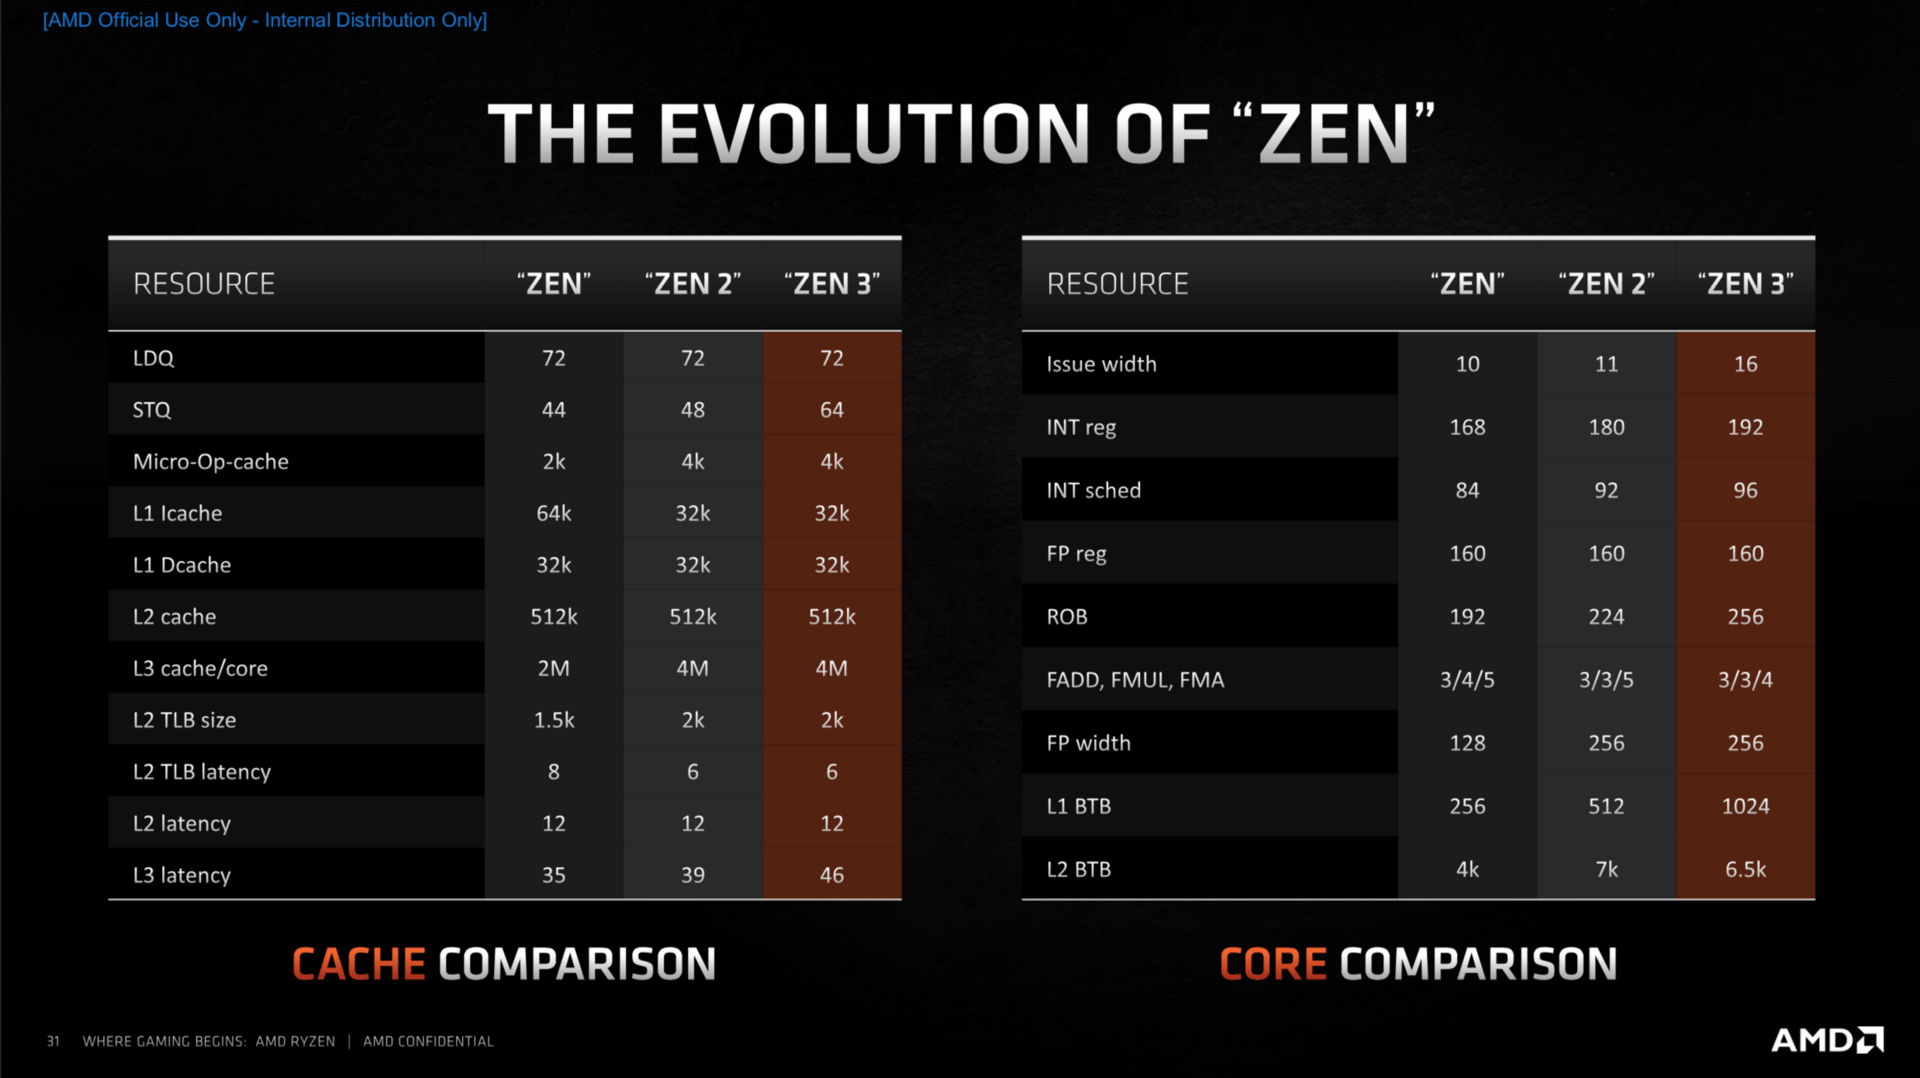 Zen-3-Architektur: Die Evolution von Cache und Kernen